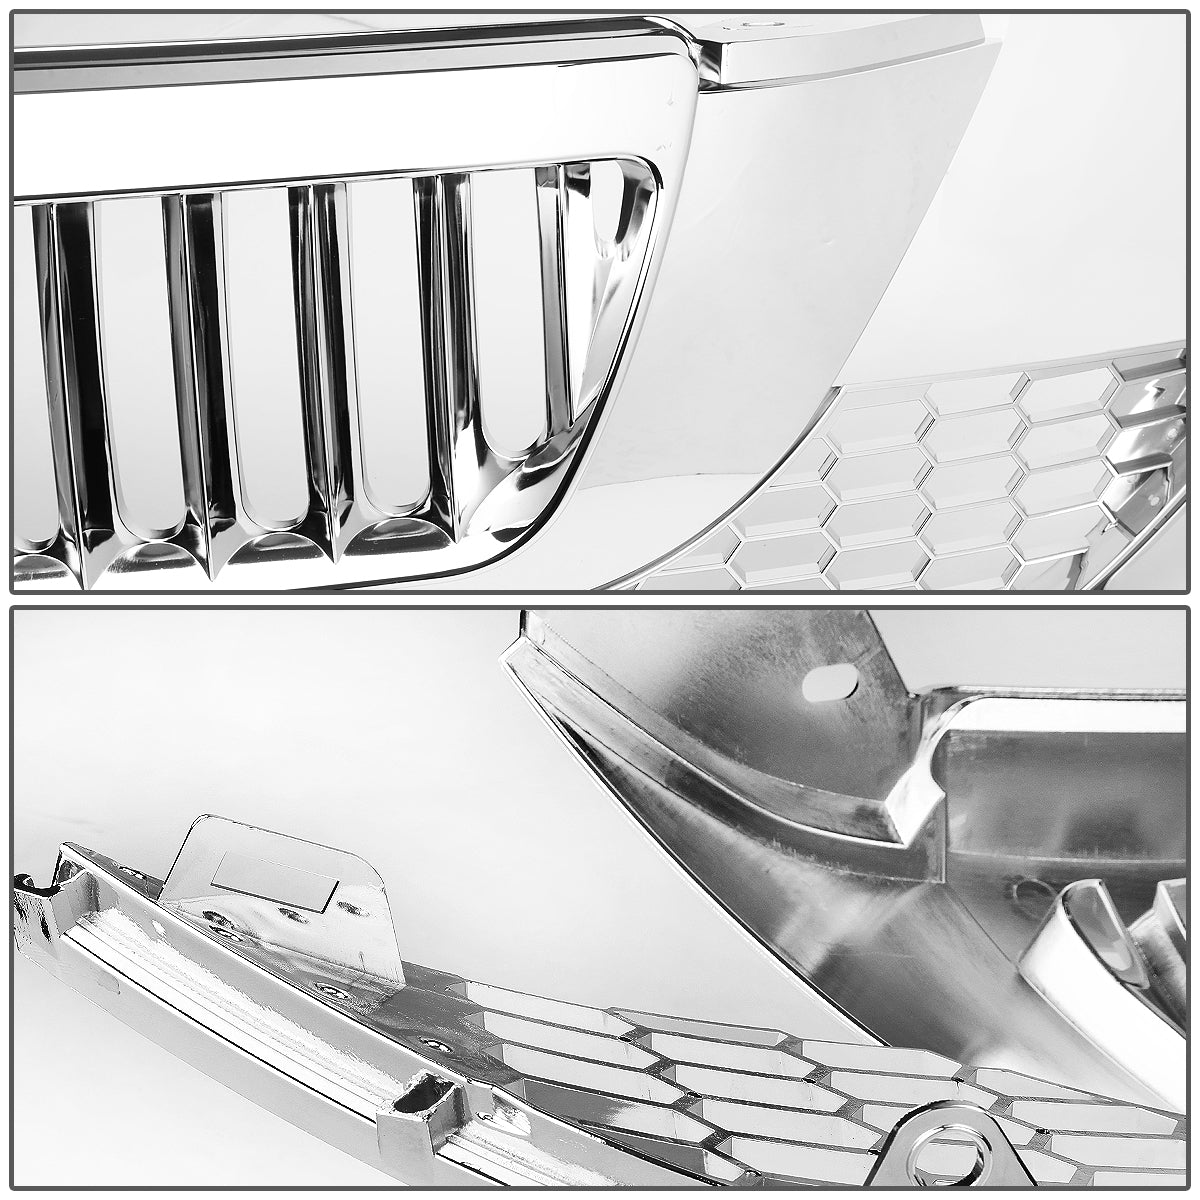 07-09 Honda CR-V Front Grille - Badgeless Vertical Fence Style - Chrome